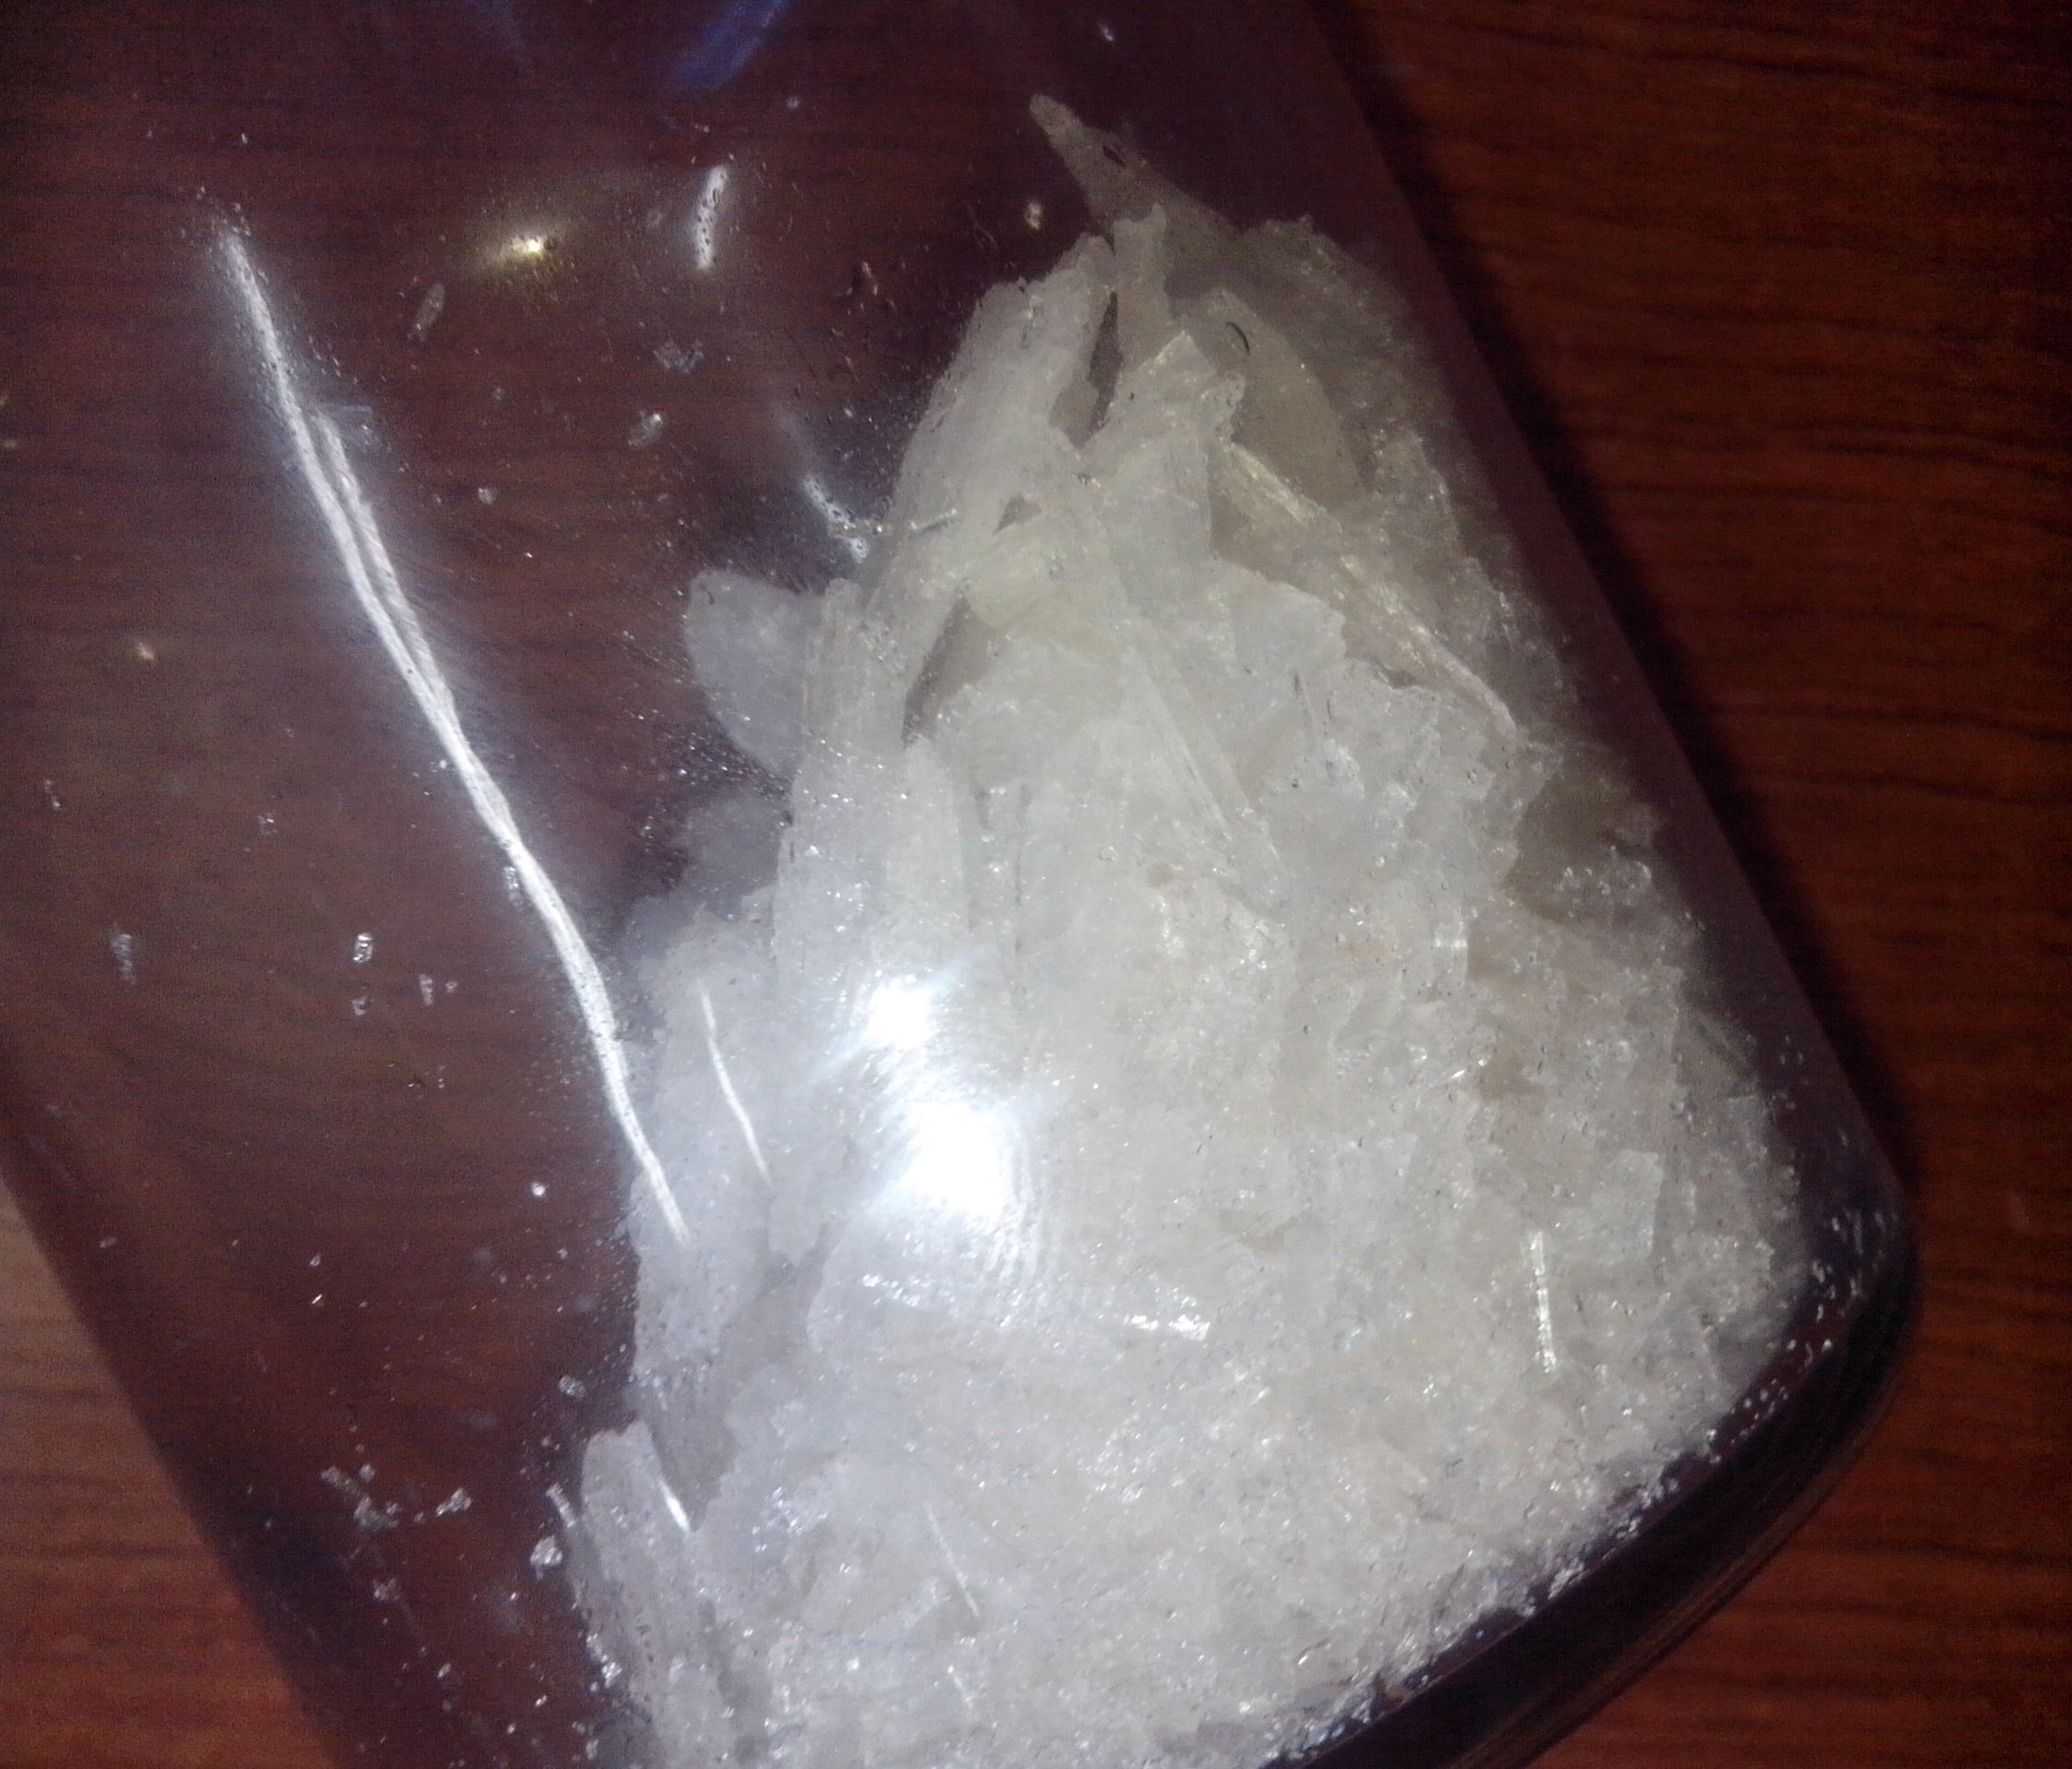 N,N-二甲基氯烯亚胺,Eschenmoser's salt